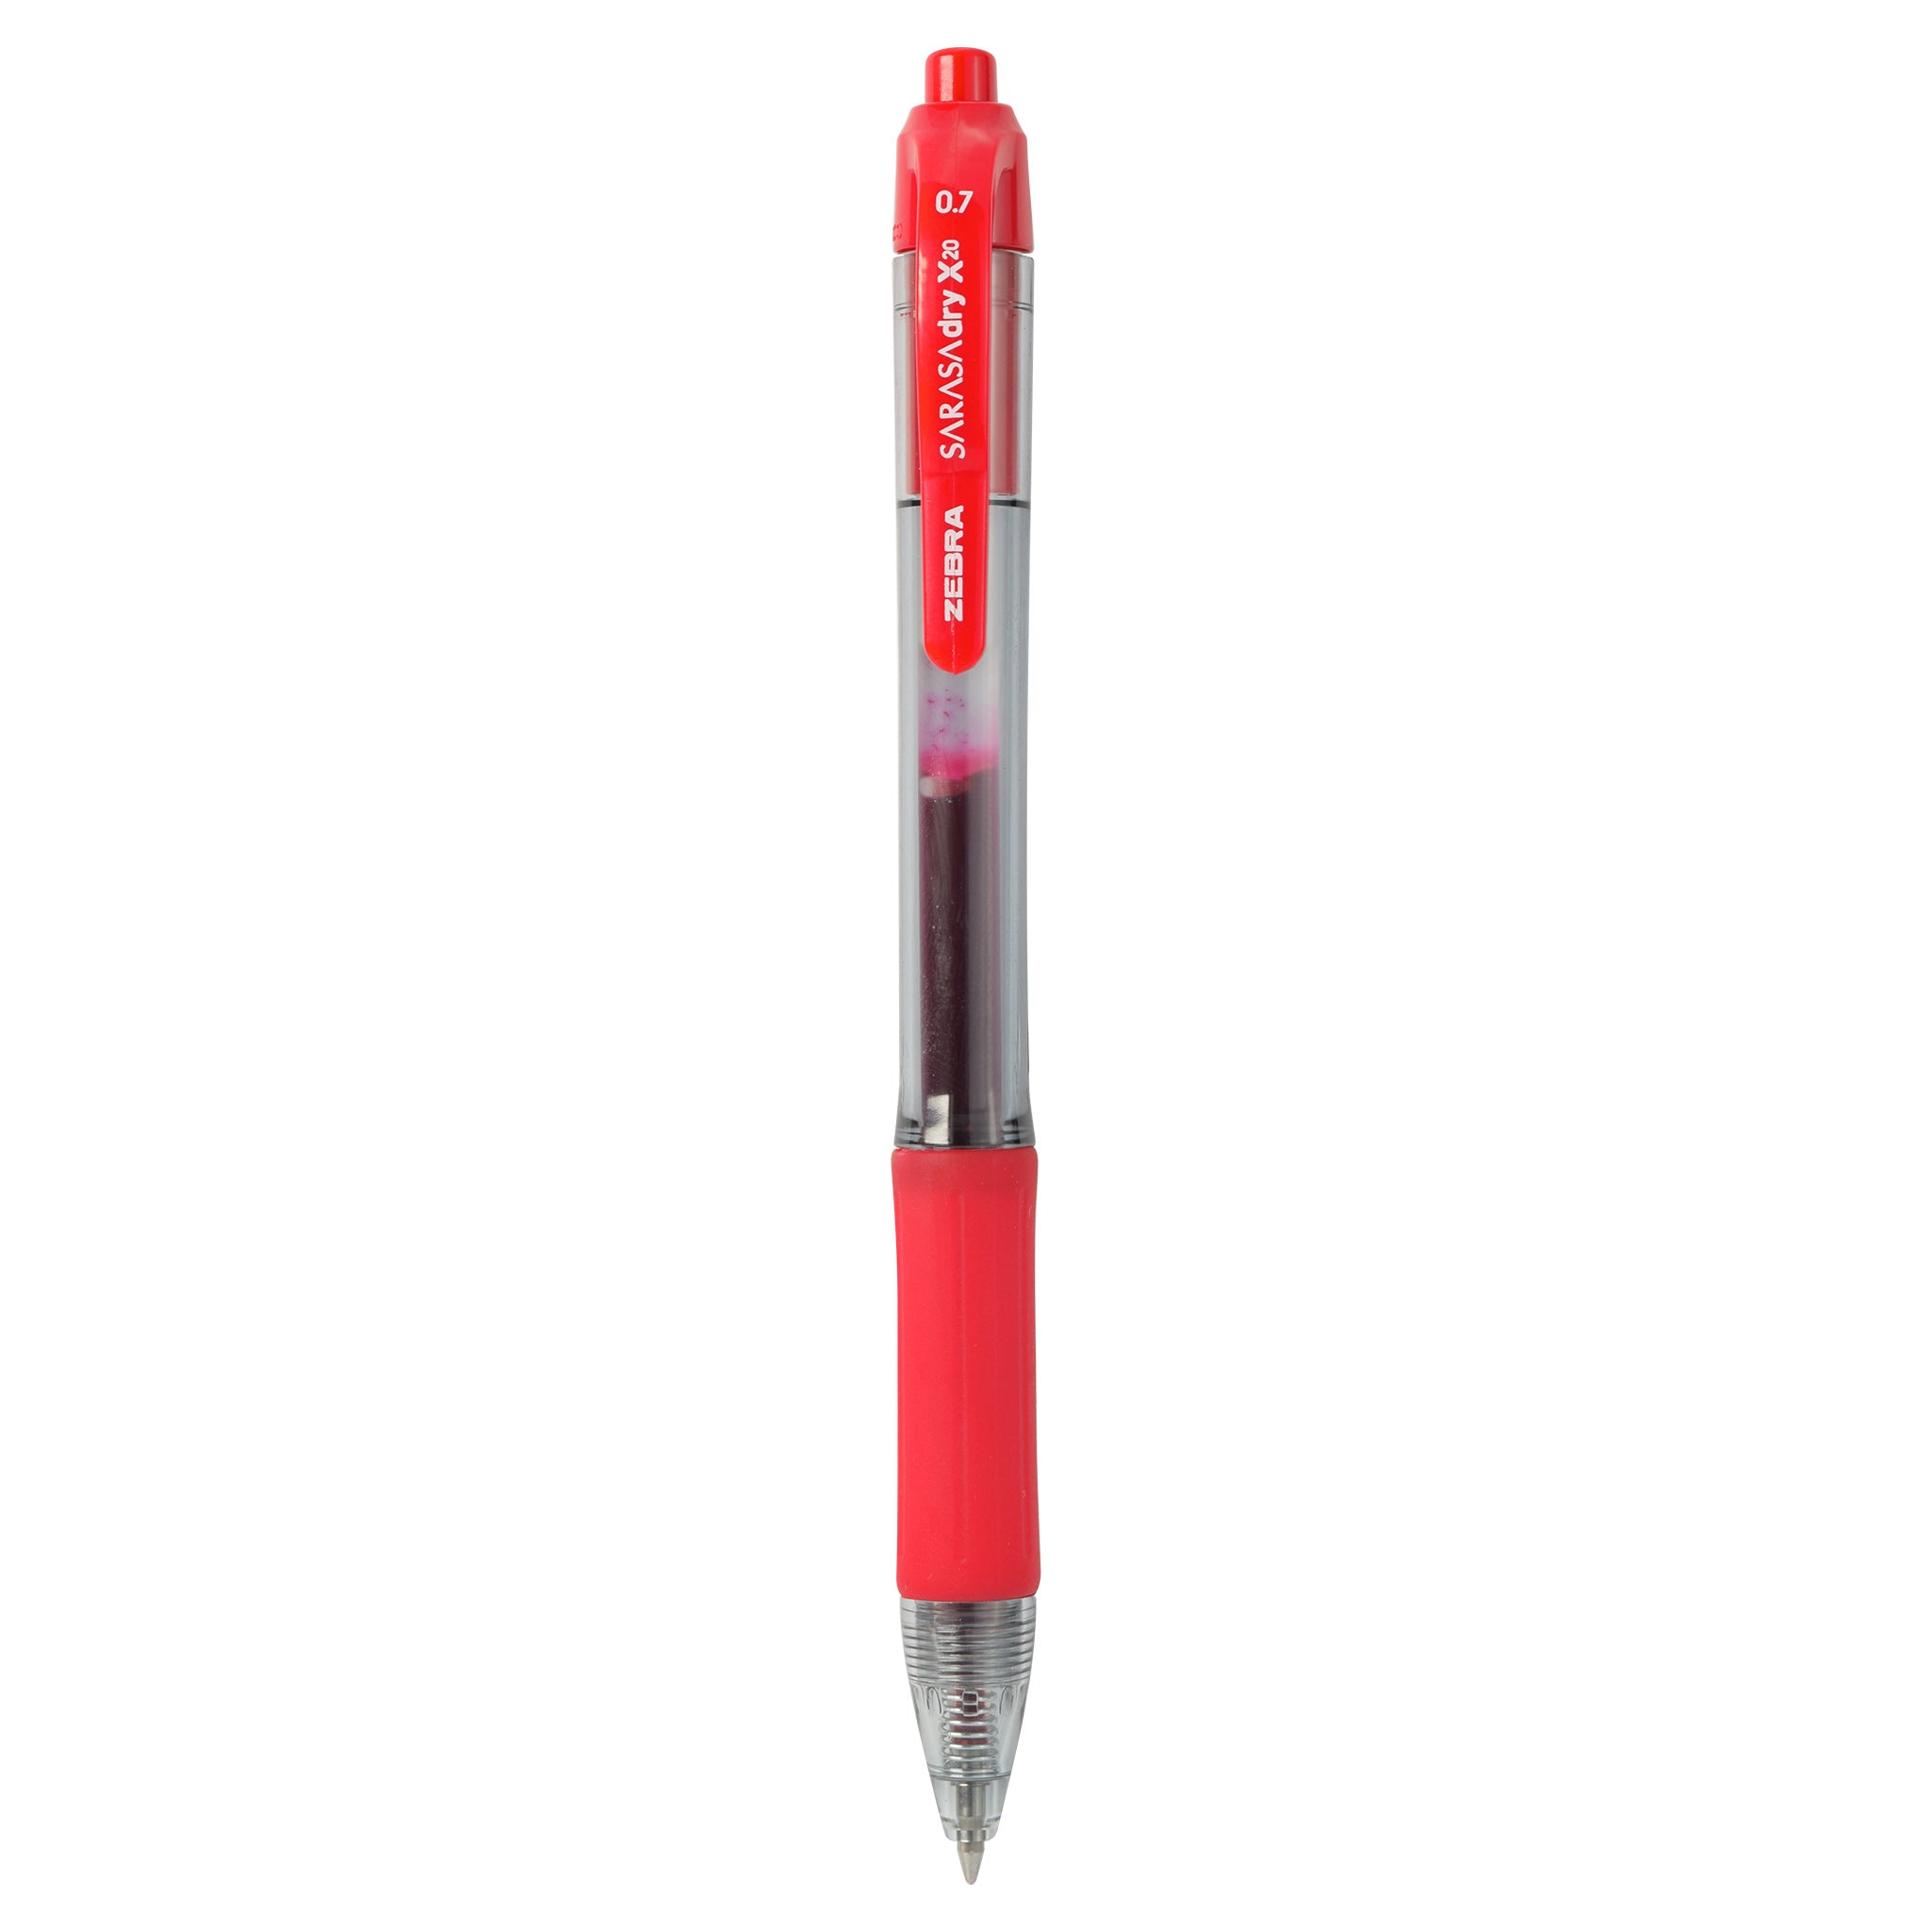 Zebra Pen Ink Ballpoint & Rollerball Pens for sale